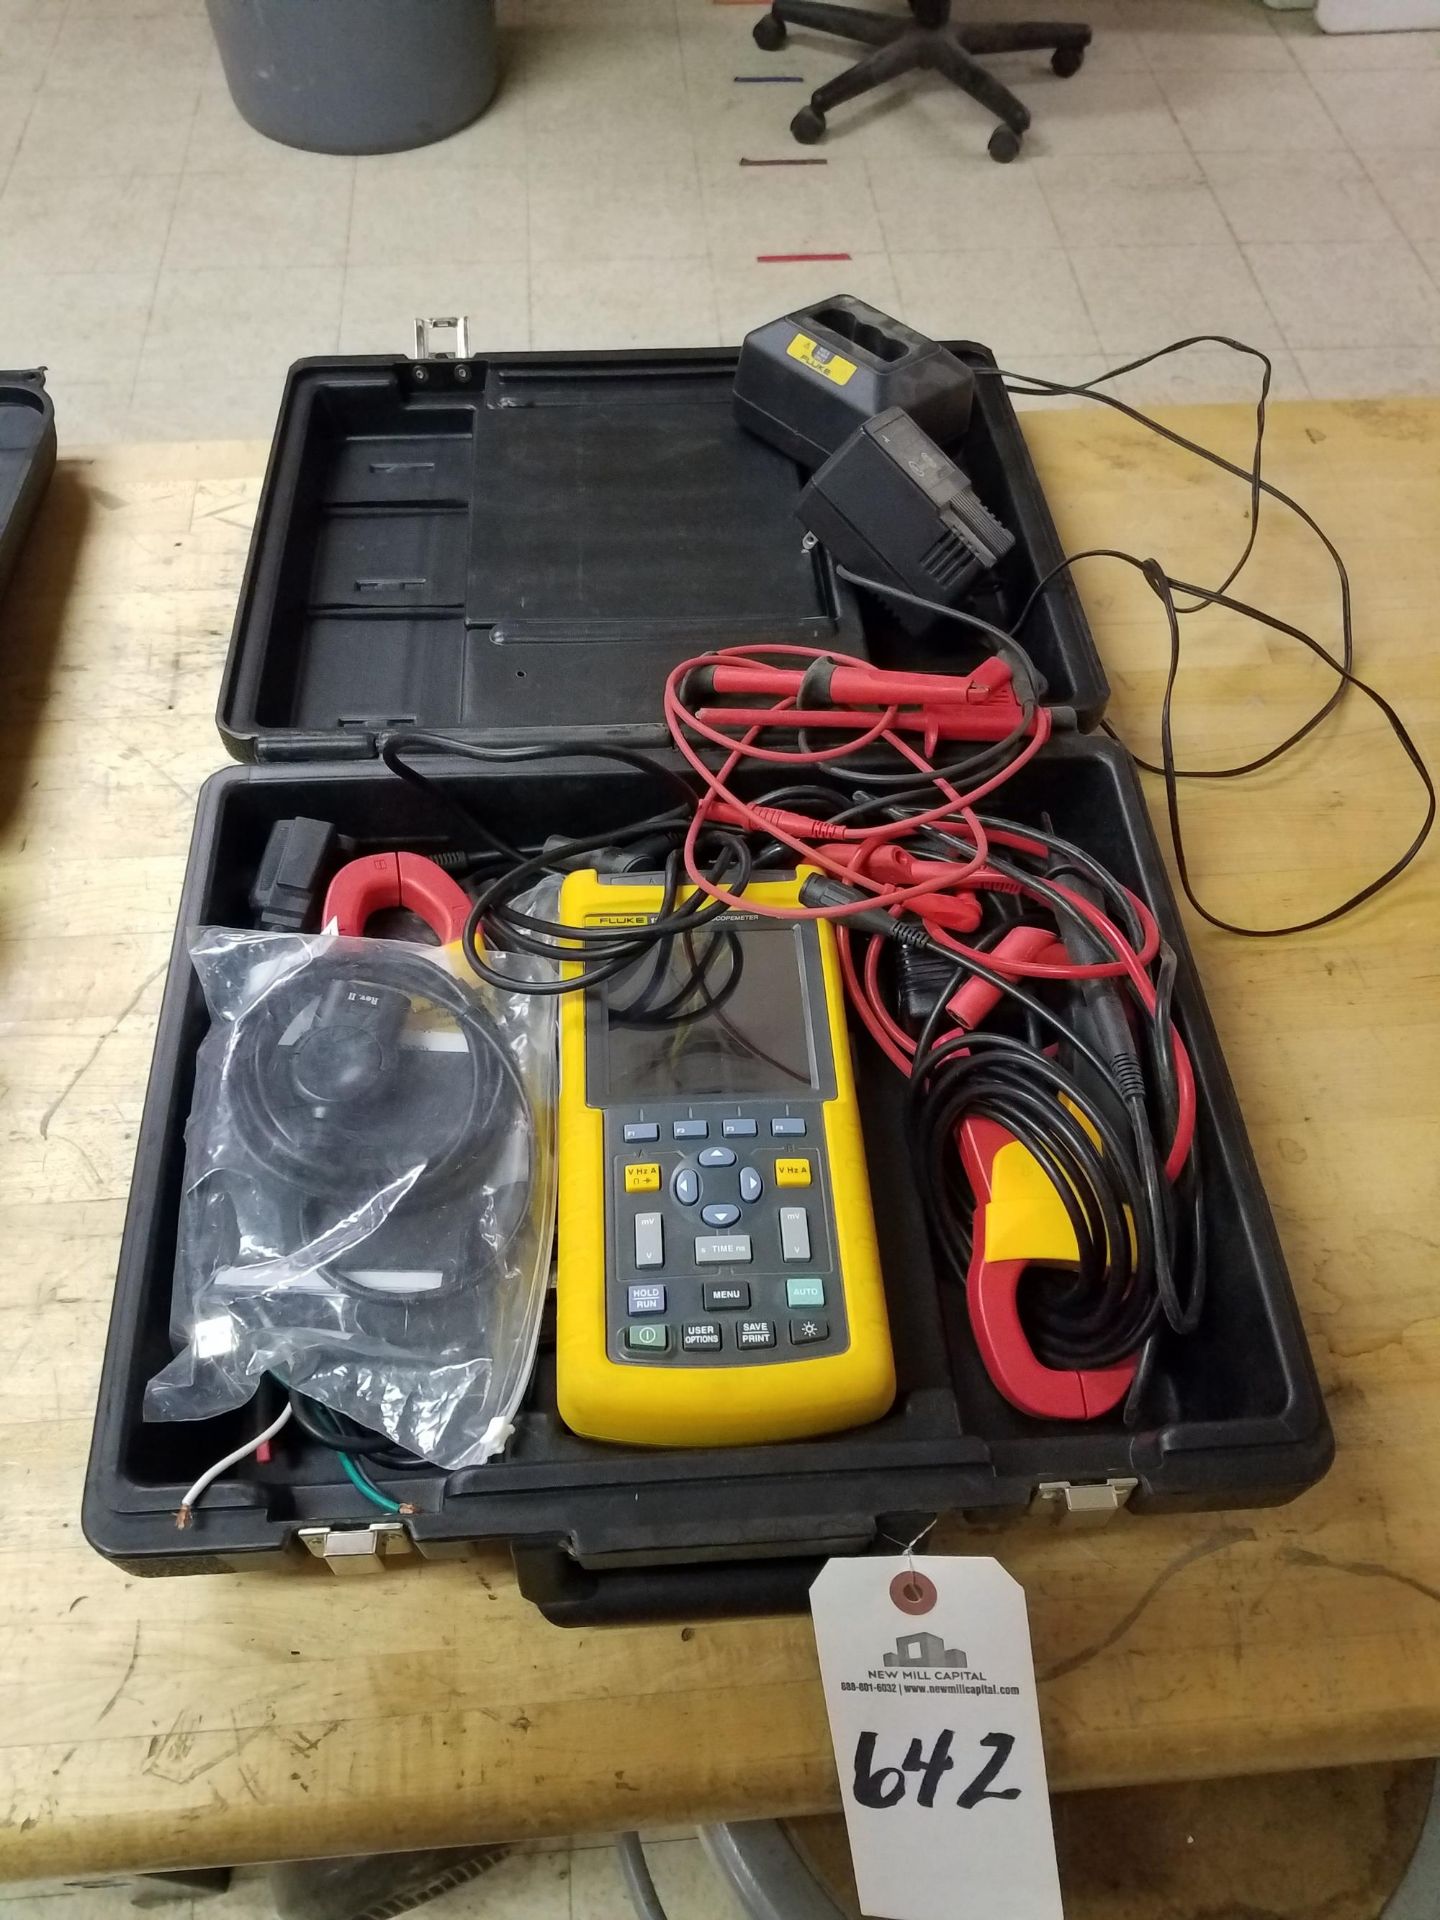 Fluke Electrical Tester | Rig Fee: $25